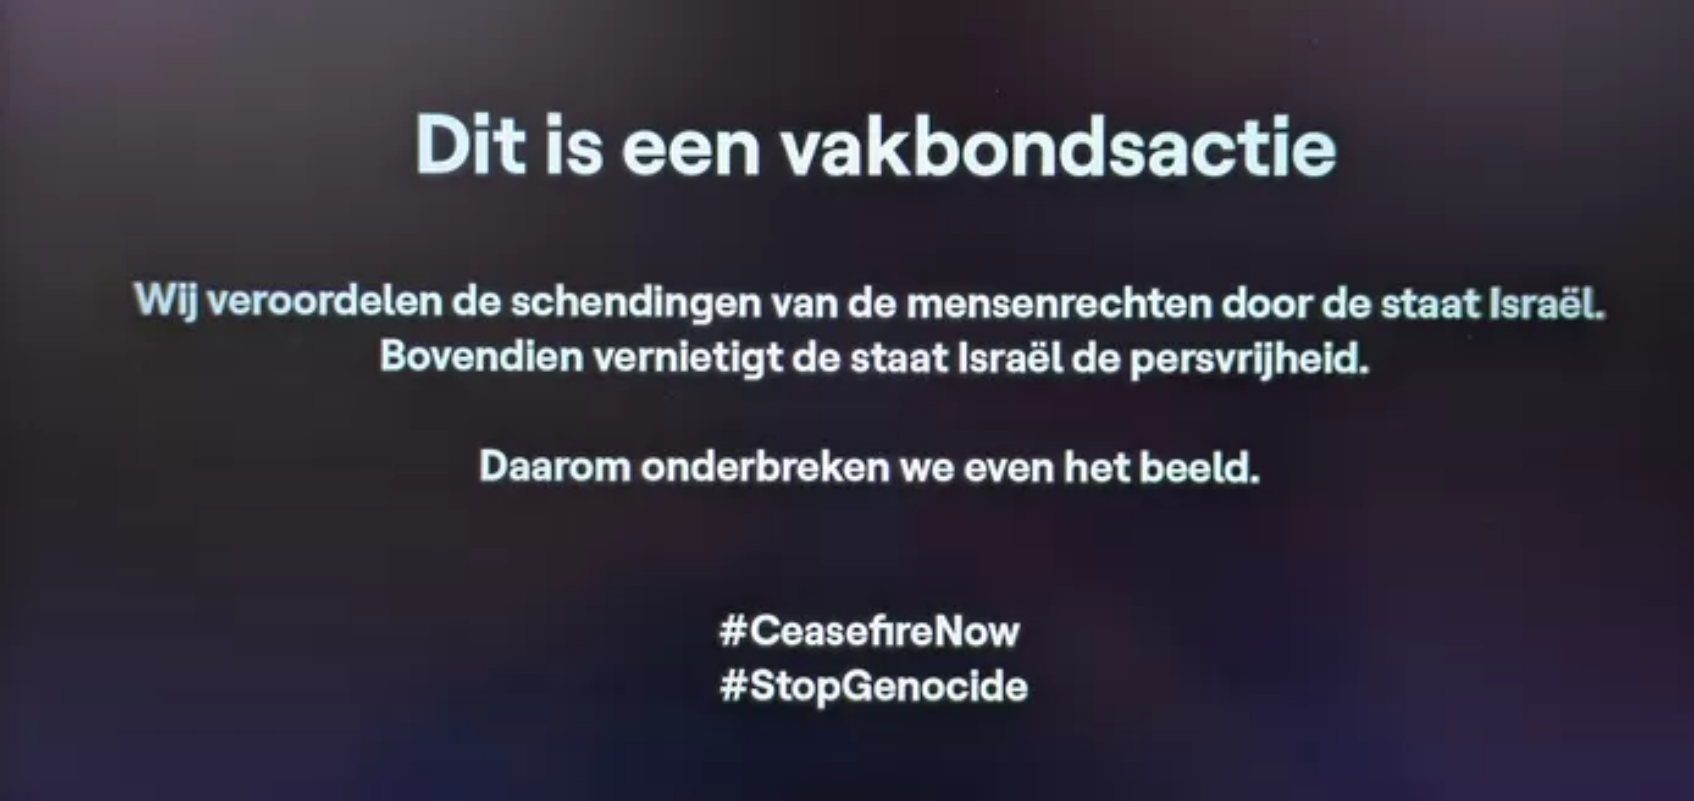 Στο Βέλγιο οι εργαζόμενοι στην κρατική τηλεόραση διέκοψαν τη μετάδοση της Eurovision  σε ένδειξη αλληλεγγύης στους Παλαιστίνιους